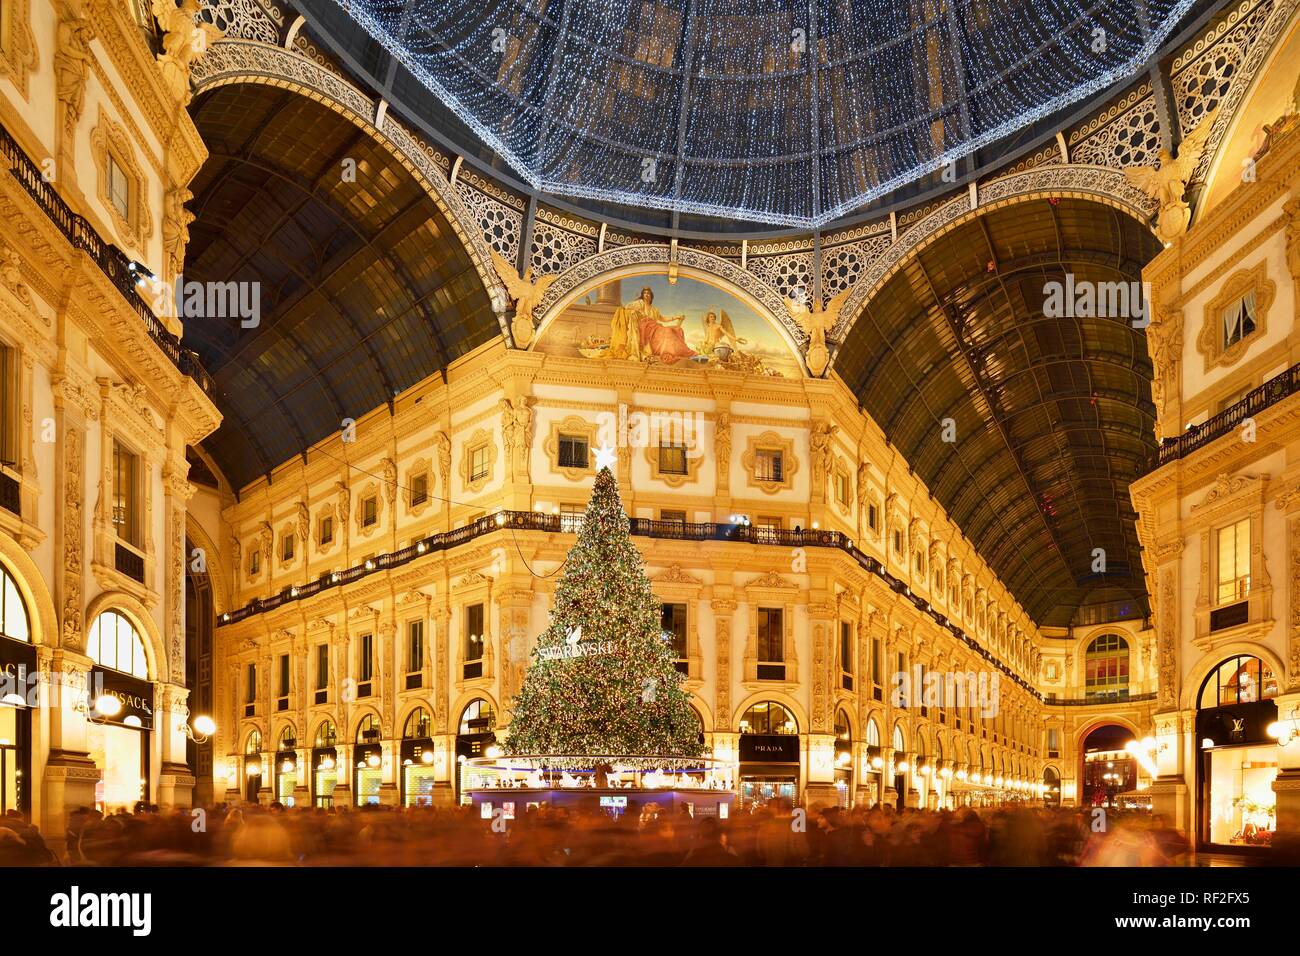 Persone ammirate albero di Natale e le luci di Natale nel lusso shopping arcade, galleria coperta Galleria Vittorio Emanuele II Foto Stock